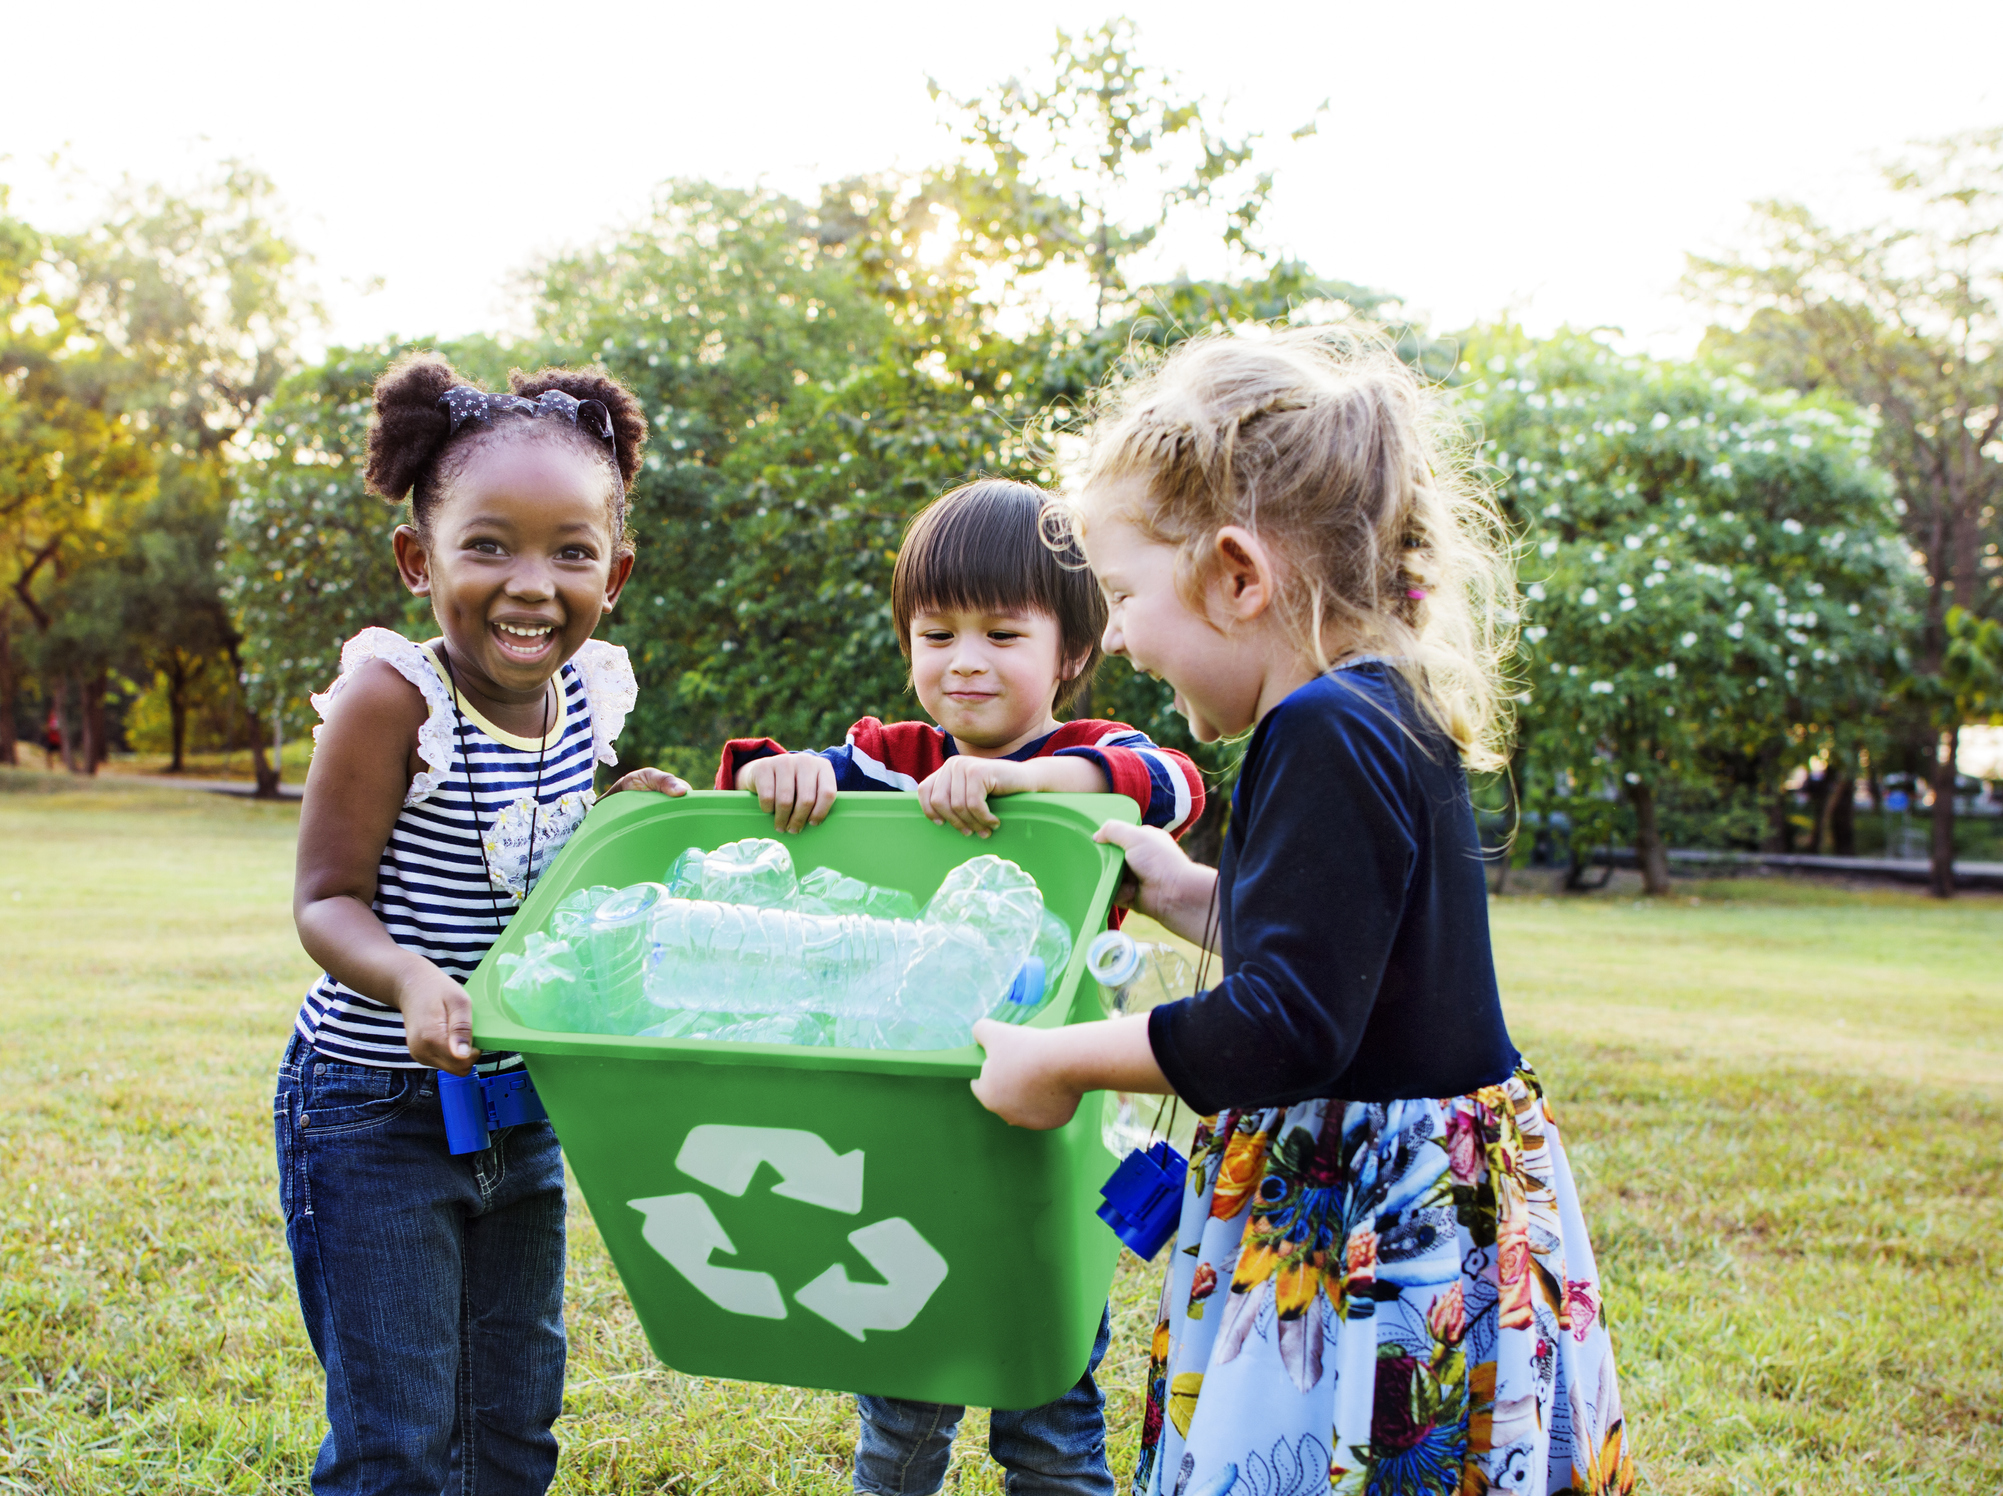 Nesta imagem podemos ver crianças da Geração Alpha juntando o lixo do parque e colocando na lixeira.